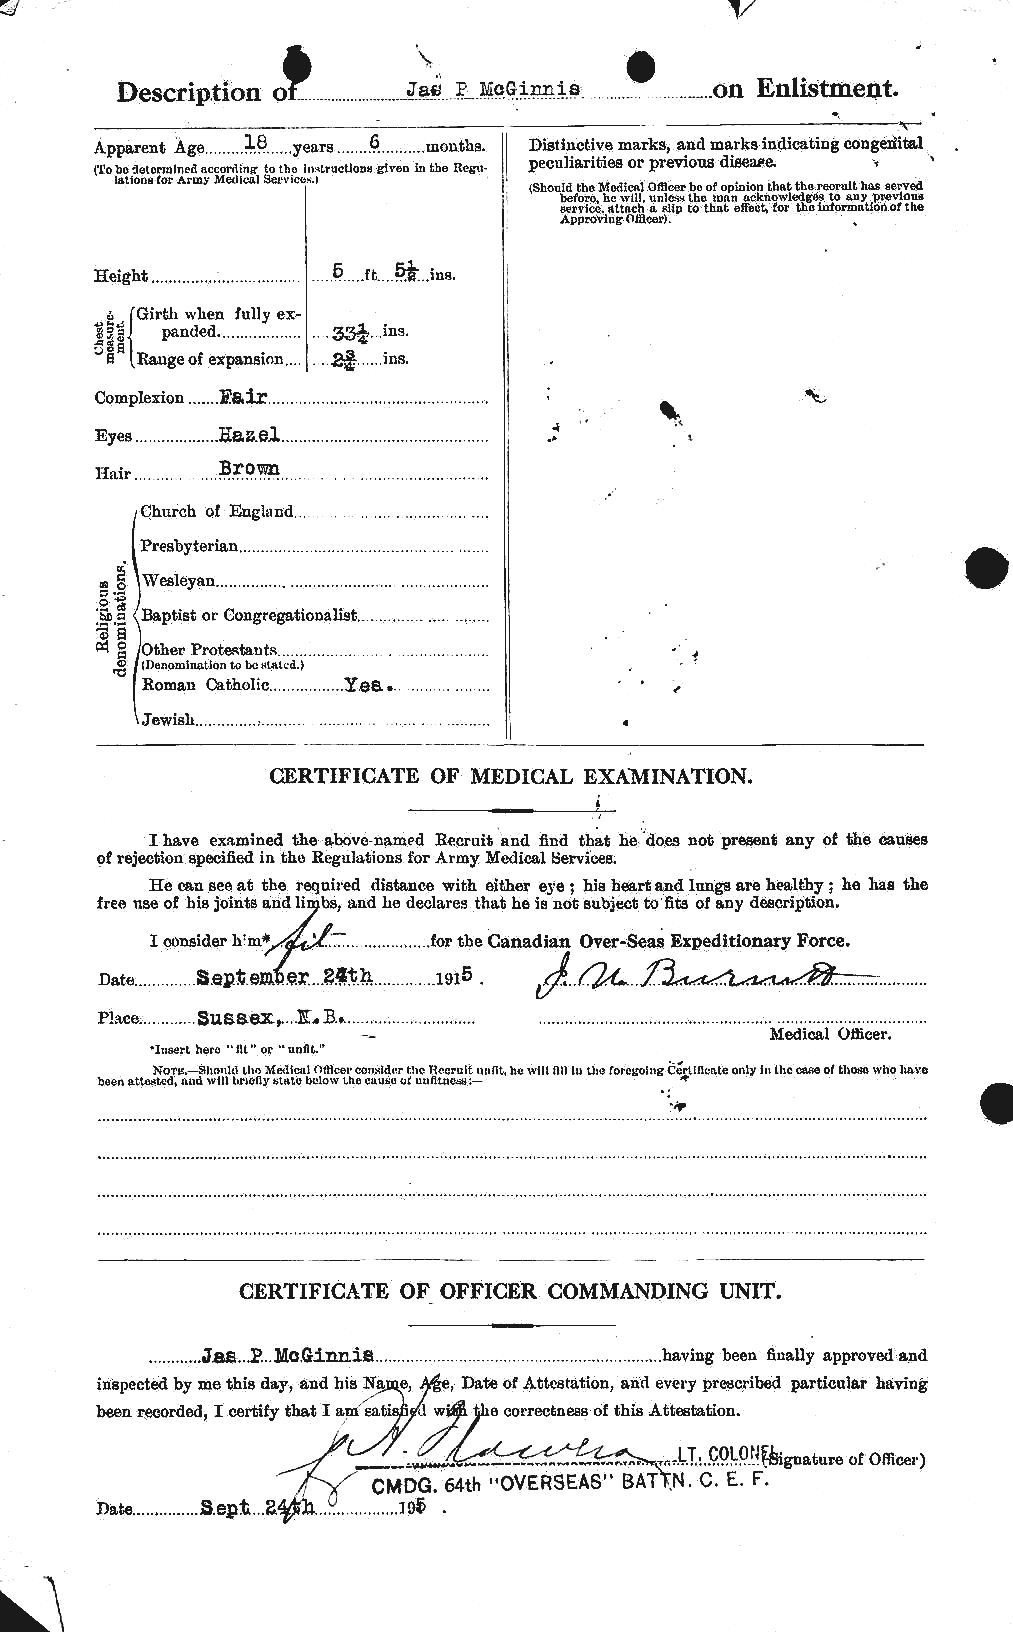 Dossiers du Personnel de la Première Guerre mondiale - CEC 526411b